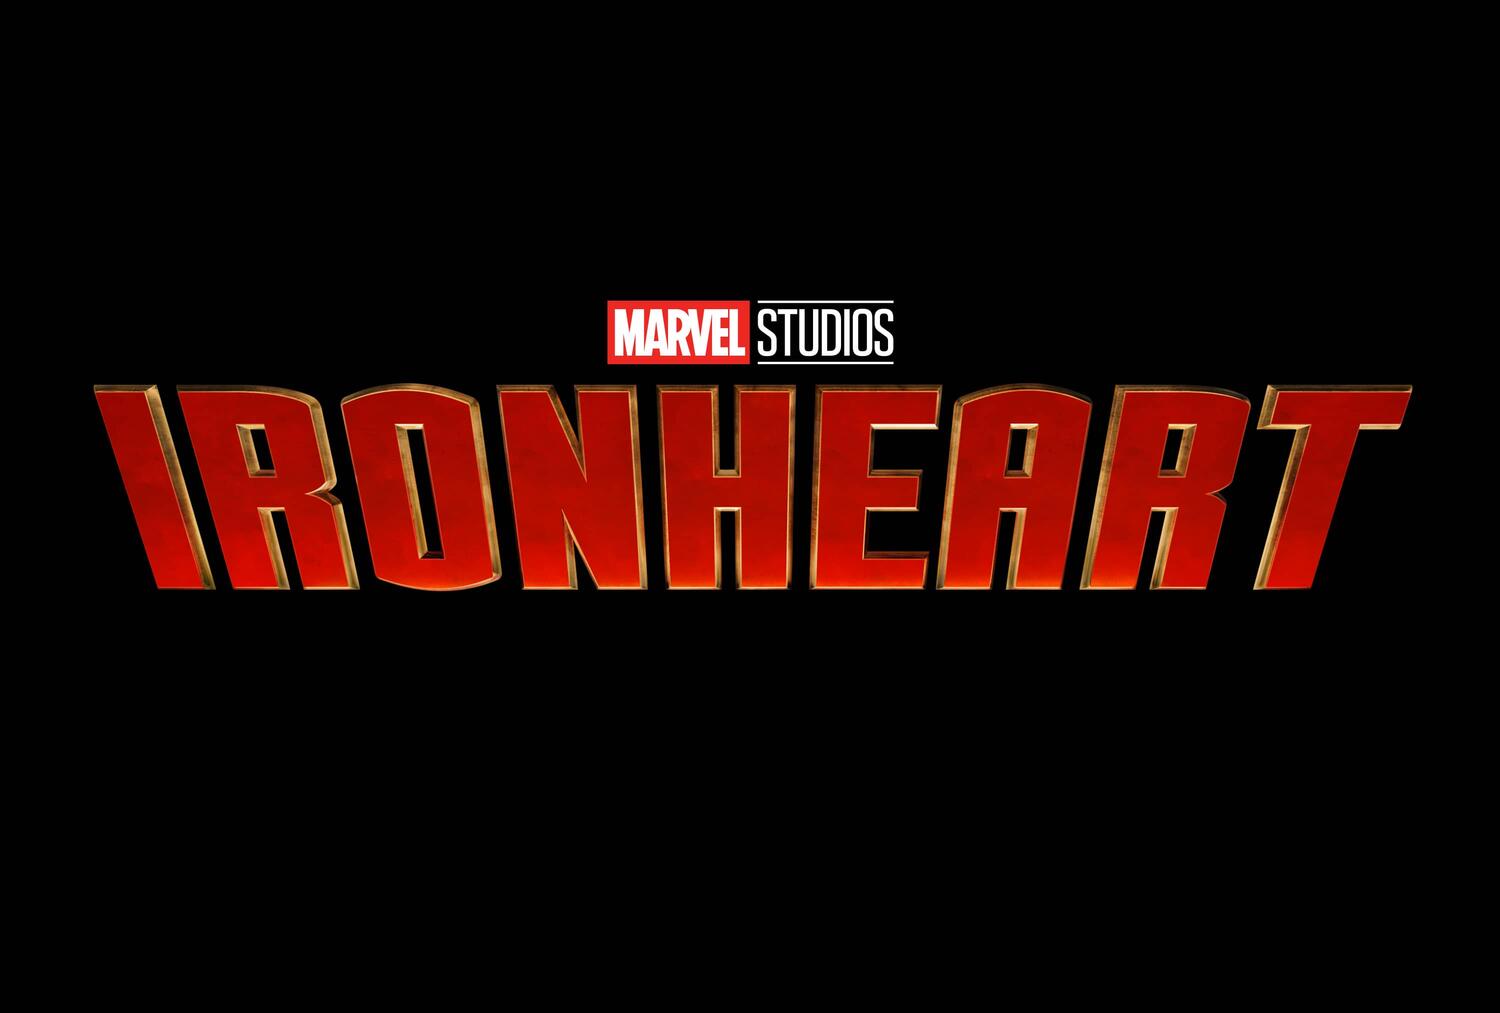 Marvel Studios Cast Dominique Thorne as Riri Williams in Upcoming 'Ironheart' Disney+ Series